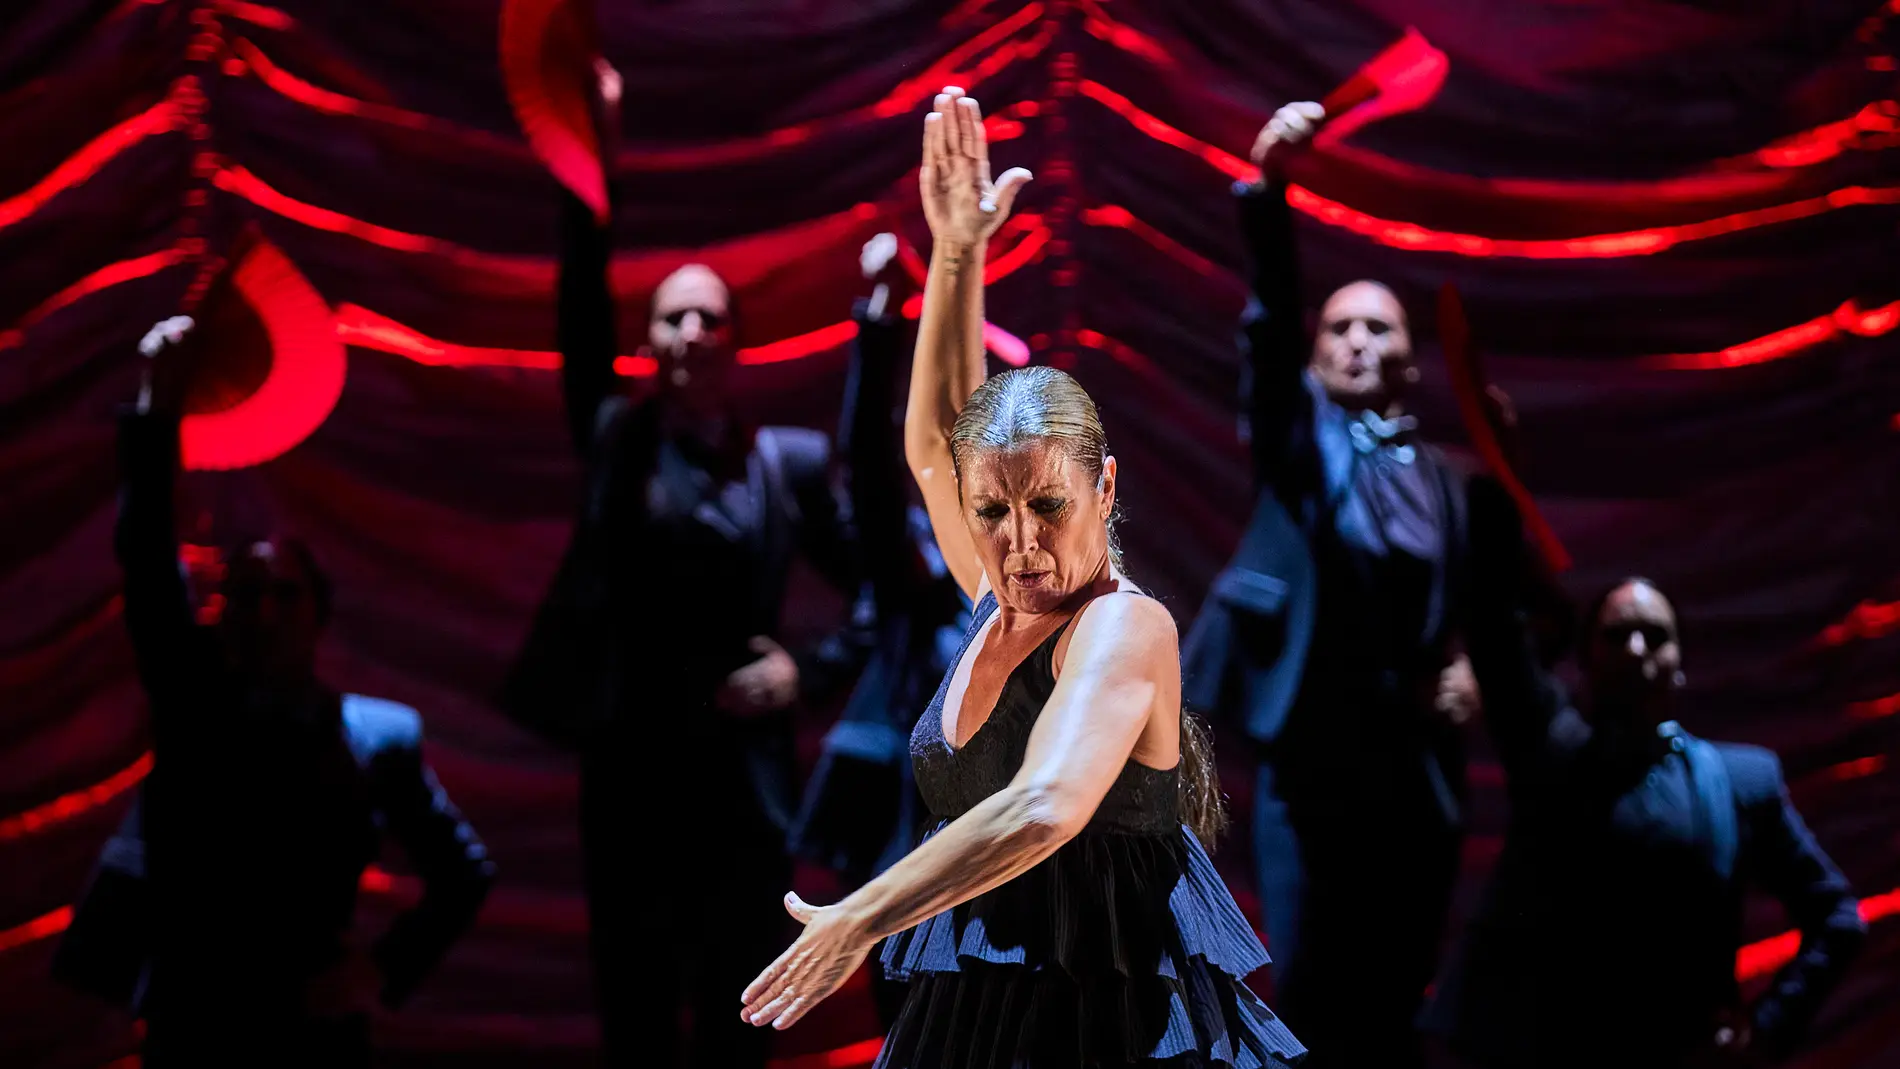 Sara Taras estrenará el 8 de septiembre en Madrid "Alma", un espectáculo en el que fusiona la "fuerza" del flamenco con la "dulzura" del bolero.